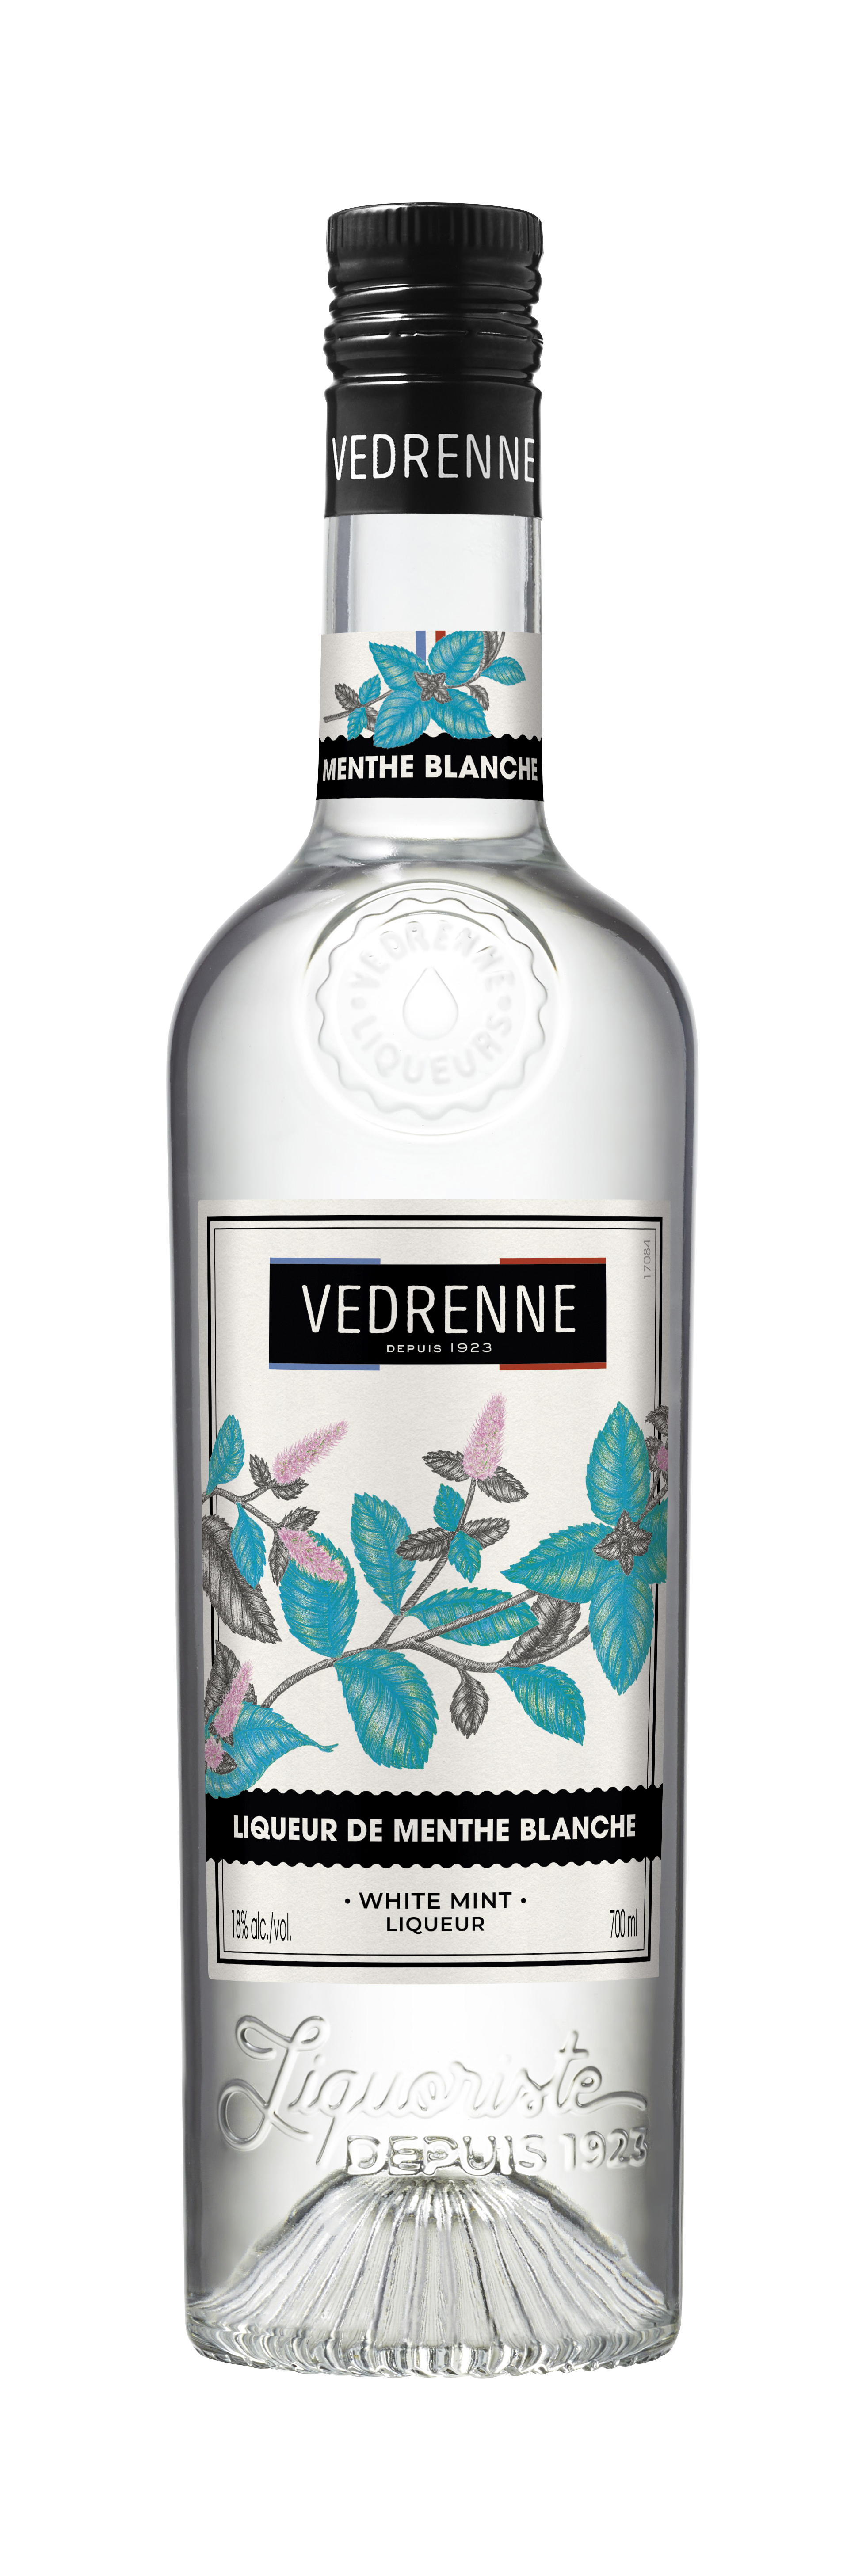 Liqueur de Menthe Blanche VEDRENNE 18% - 70cl